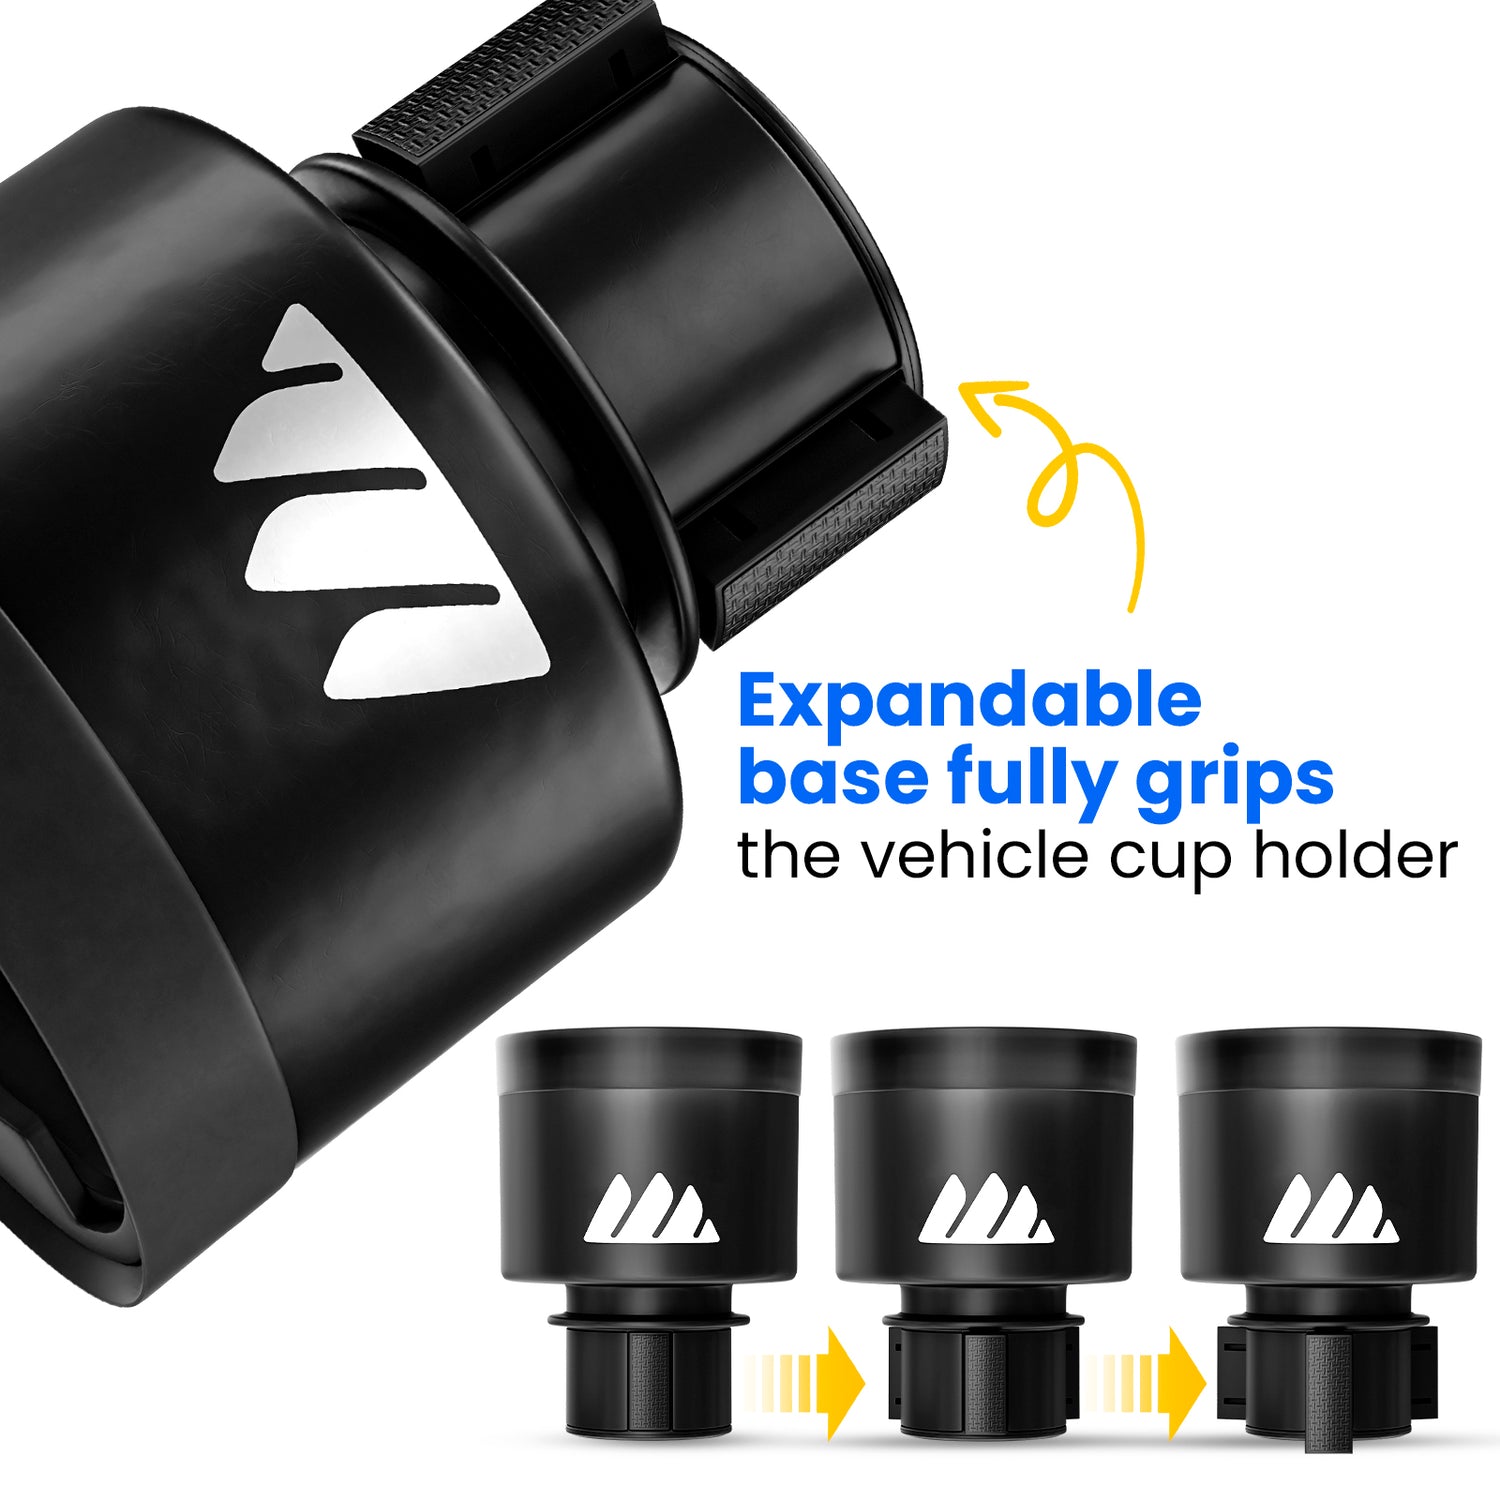 Integral Ultimate Expander Car Cup Holder Adjustable Base Expander & Organizer